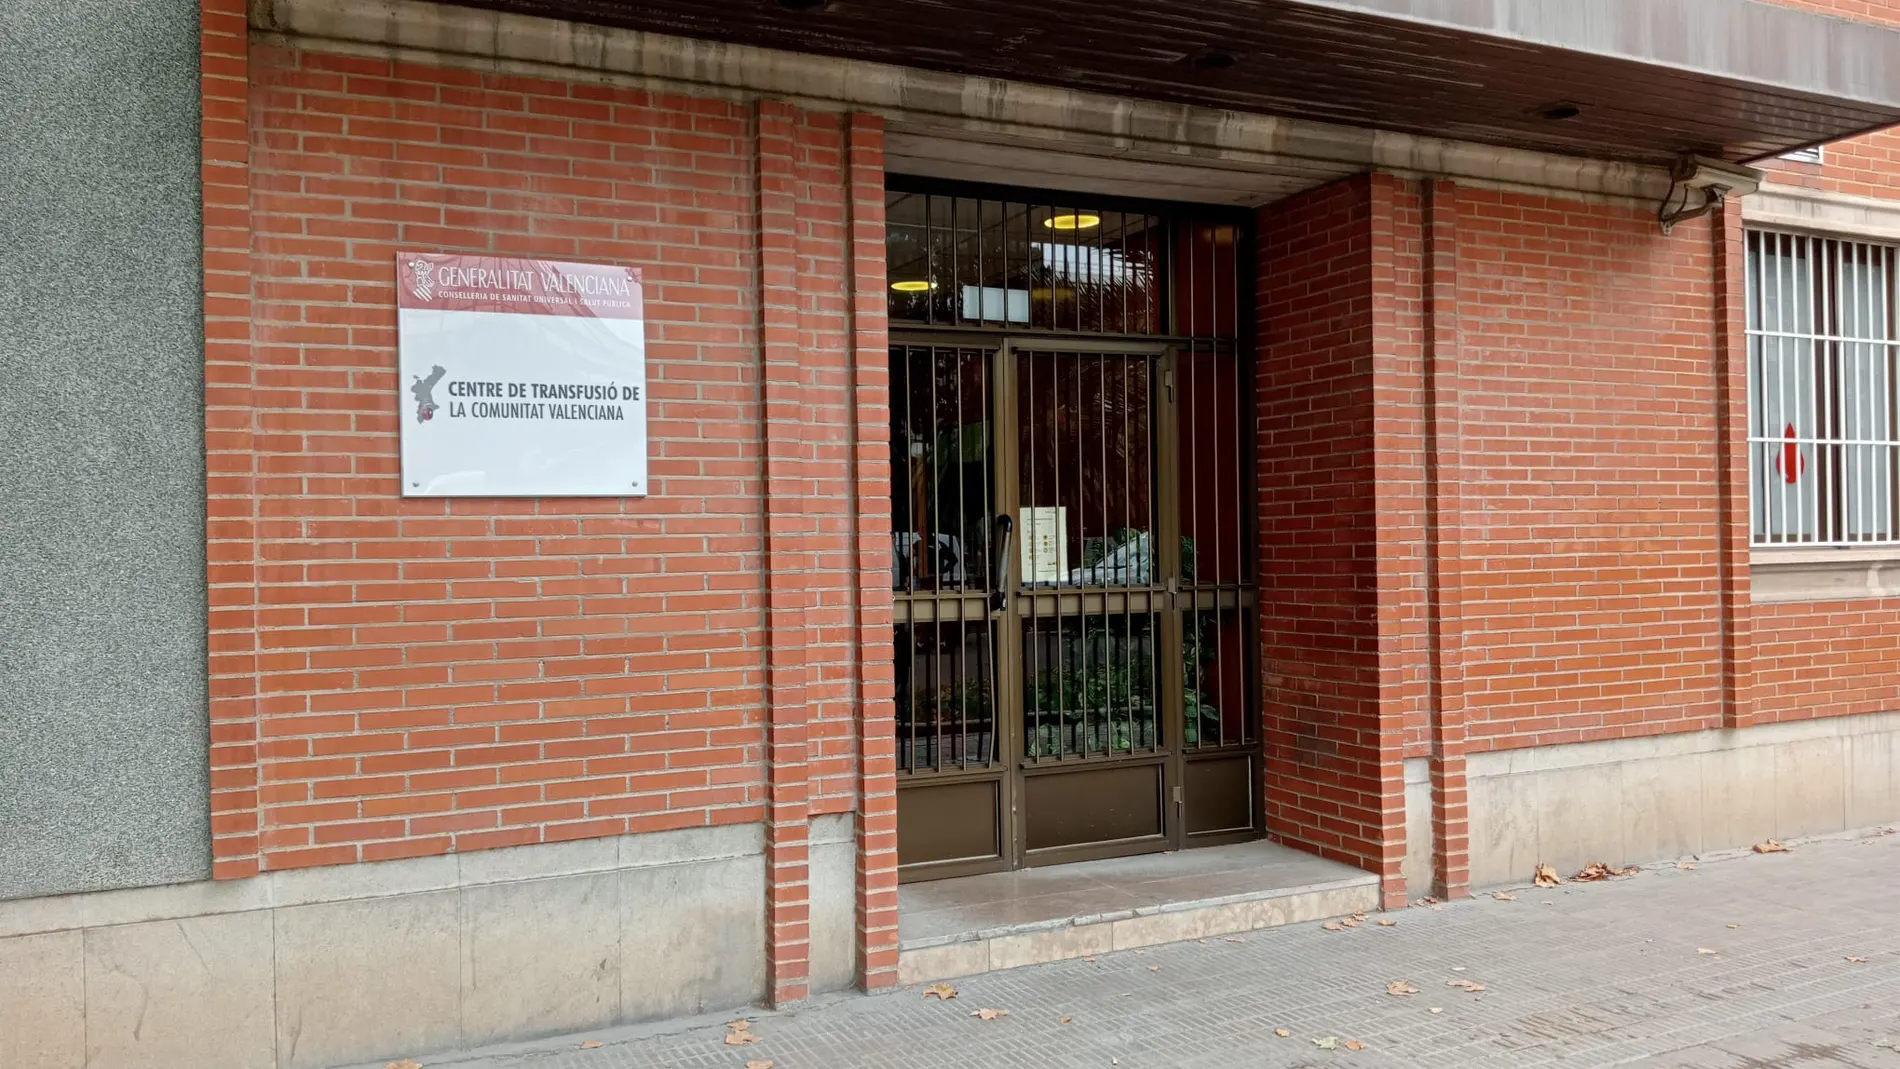 Imagen de la entrada al Centro de Transfusiones de la Comunidad Valenciana, que no cuenta con rampa de acceso